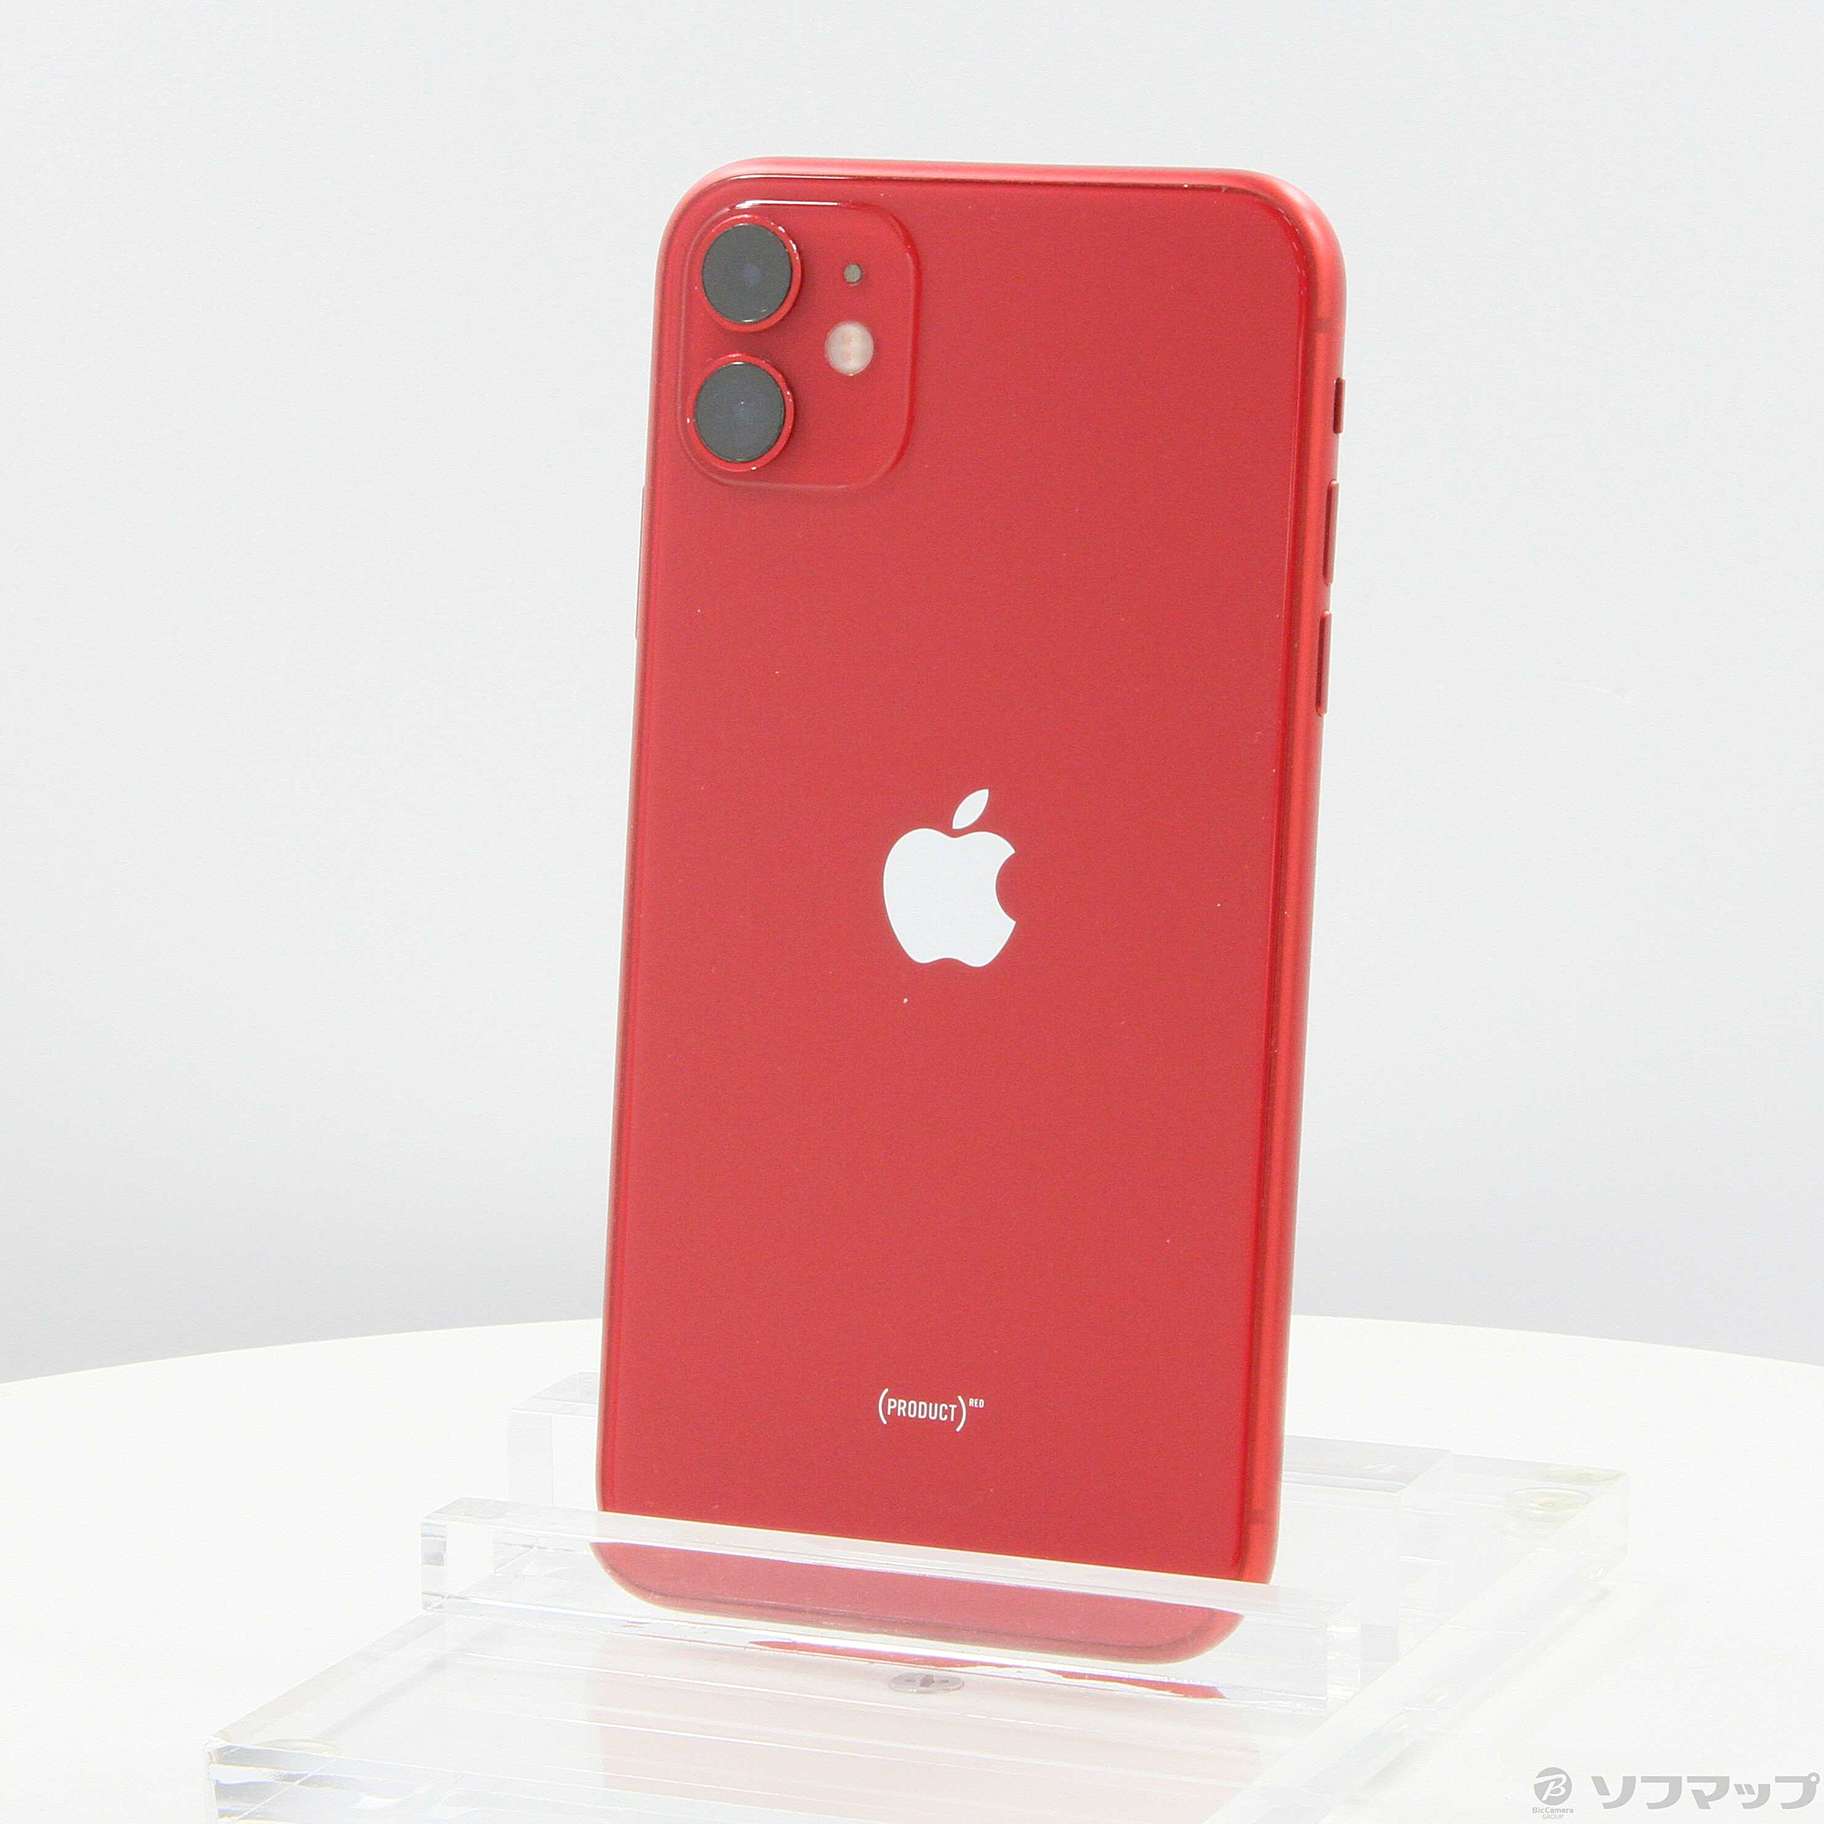 【最終値下げ】 iPhone11 128GB (PRODUCT)RED